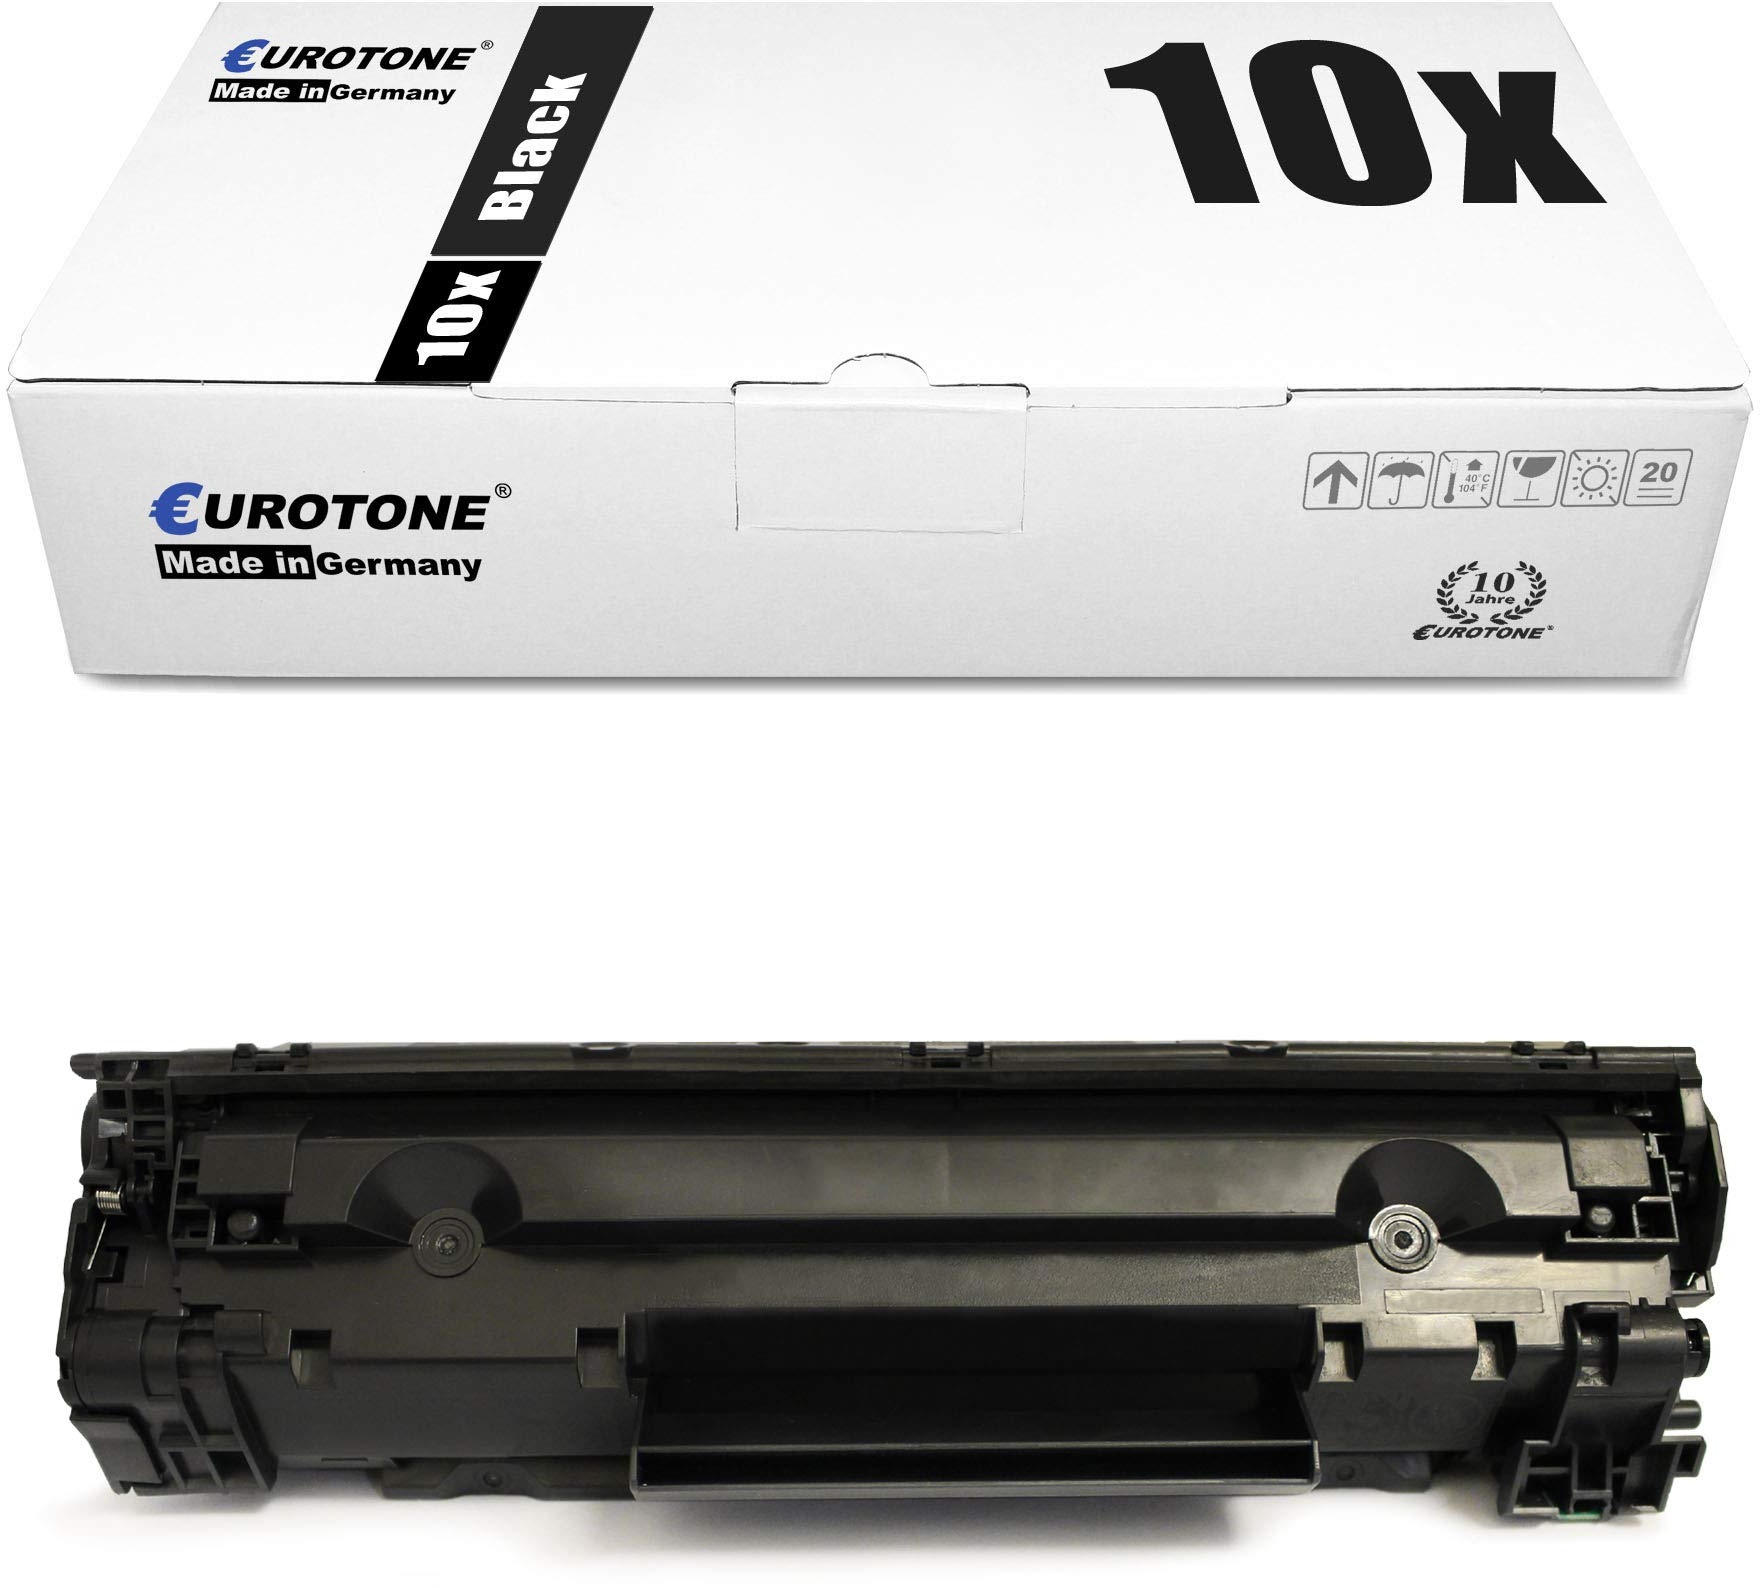 10x Müller Printware Toner kompatibel für Canon Faxphone L 100 120 140 160 190 90, 0263B002 FX10